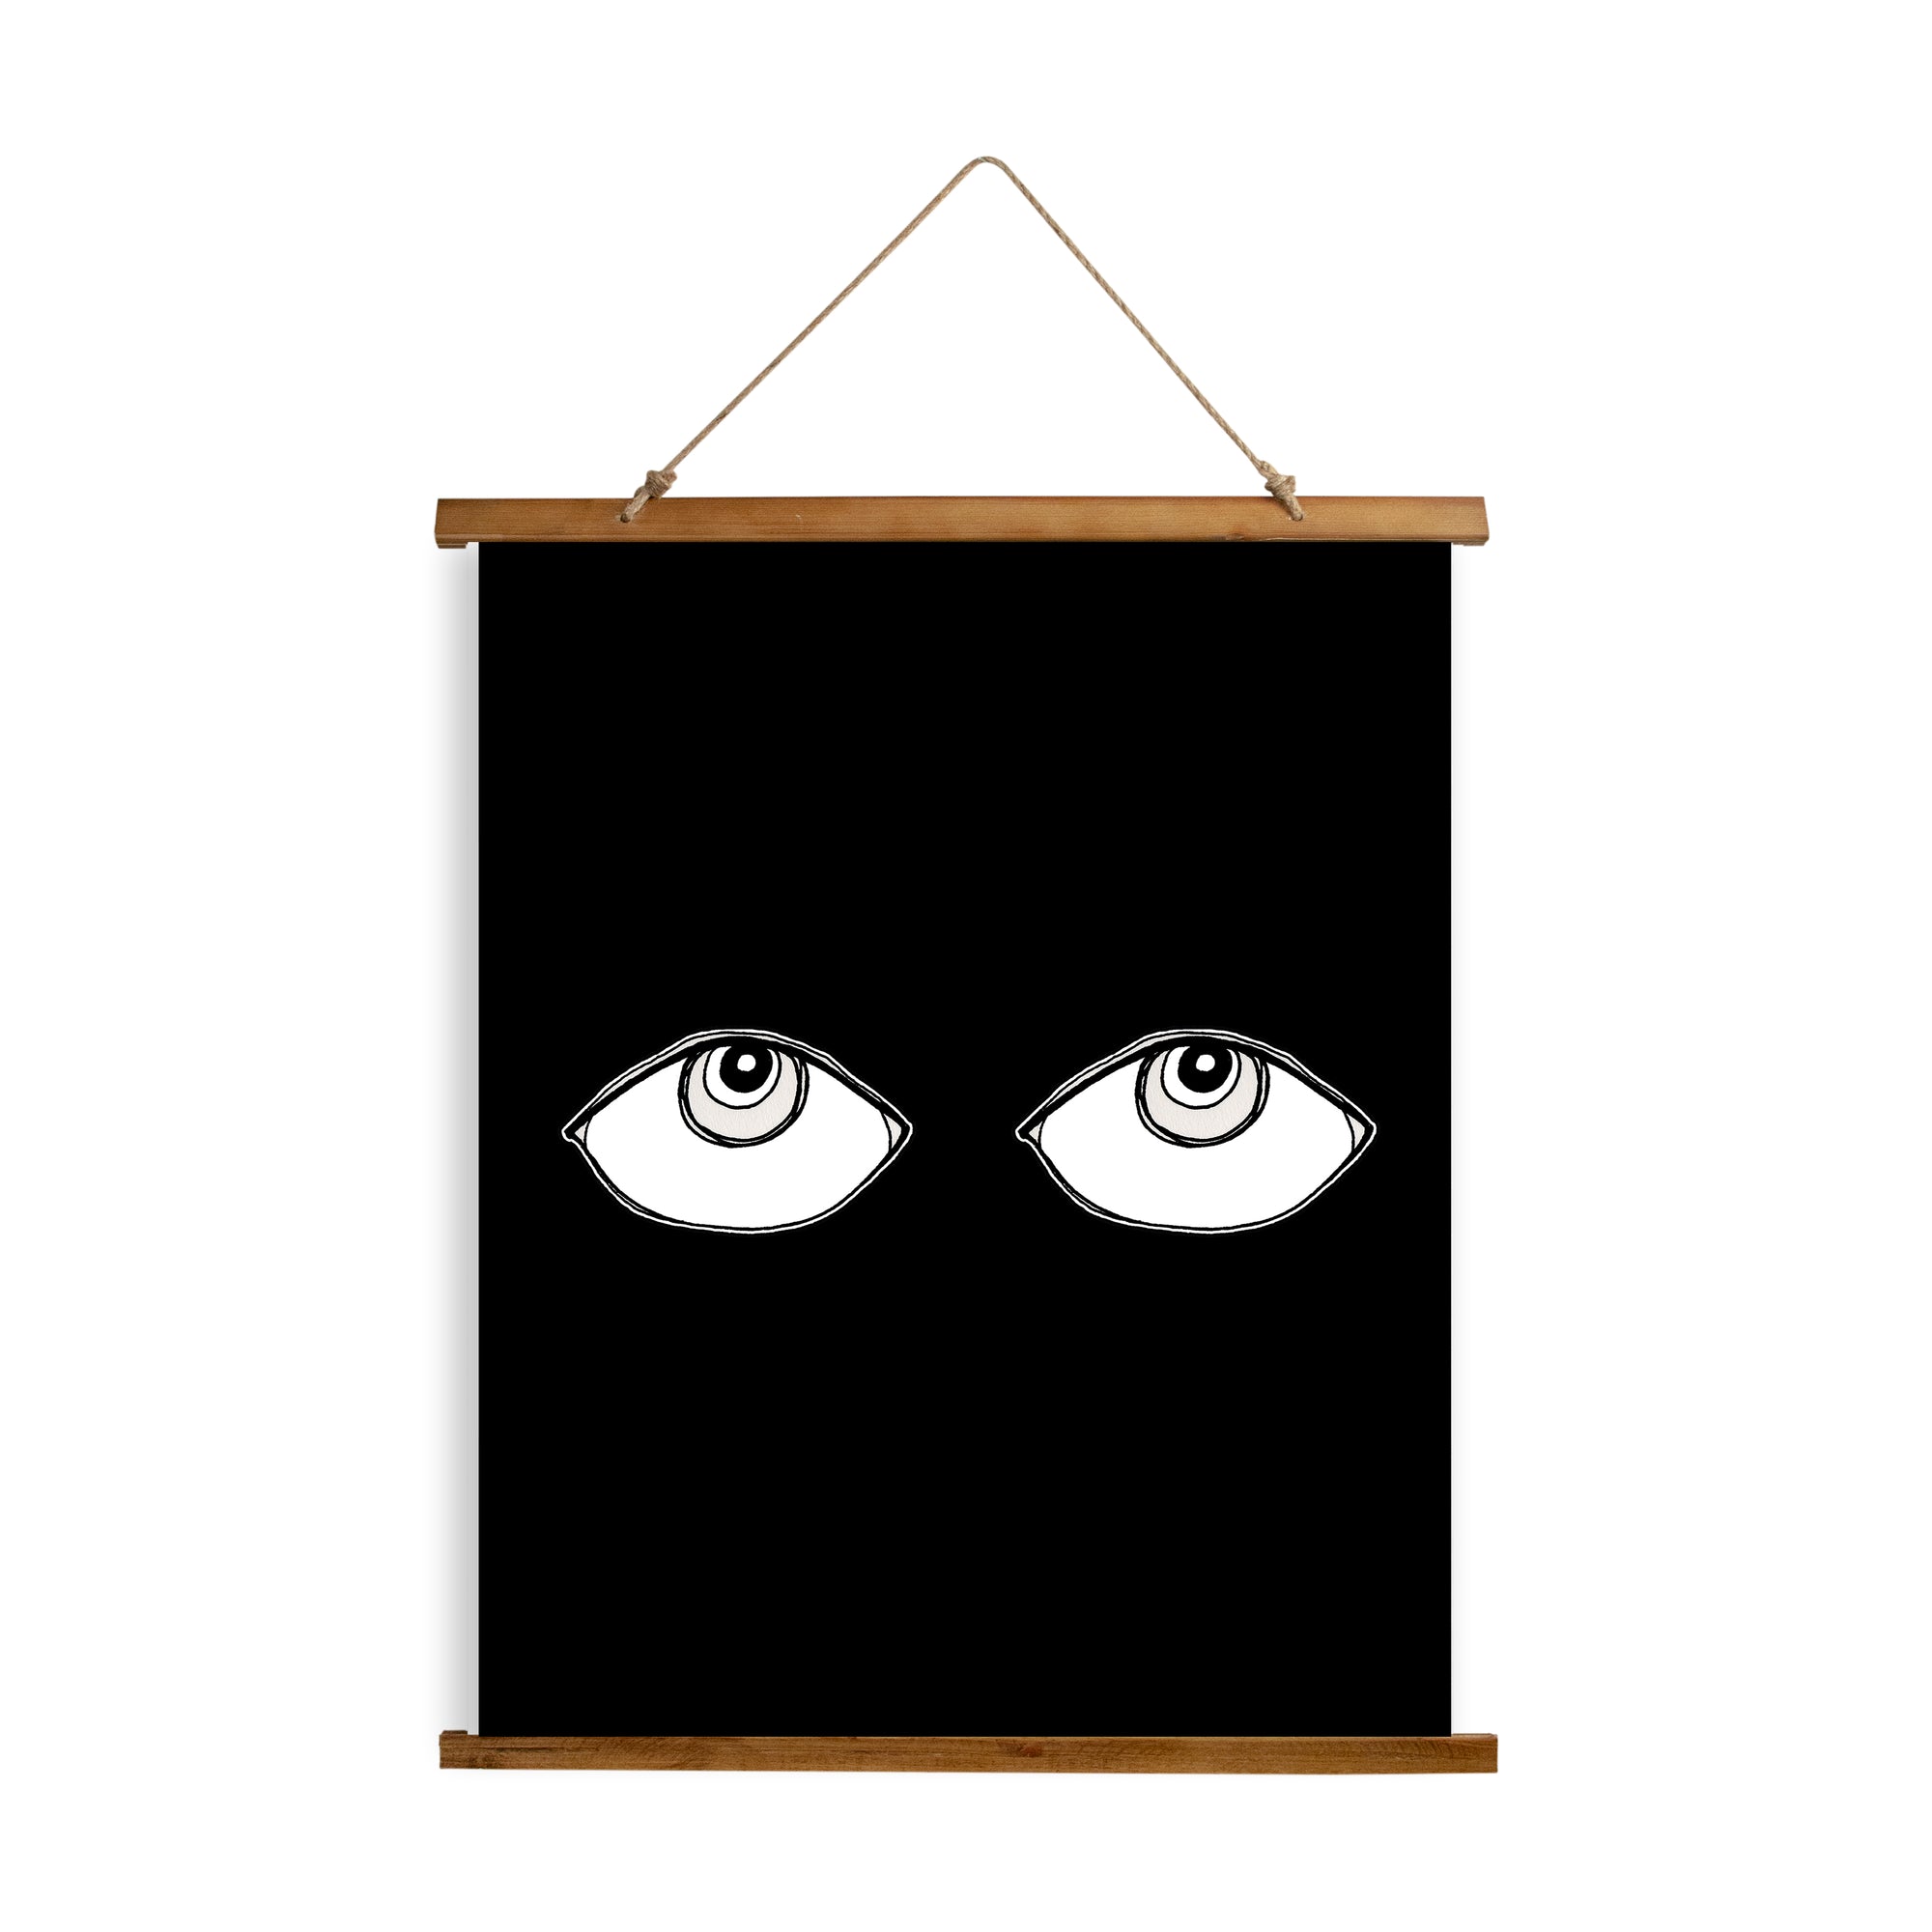 Whimsical Wood Slat Tapestry "Big Eyes"